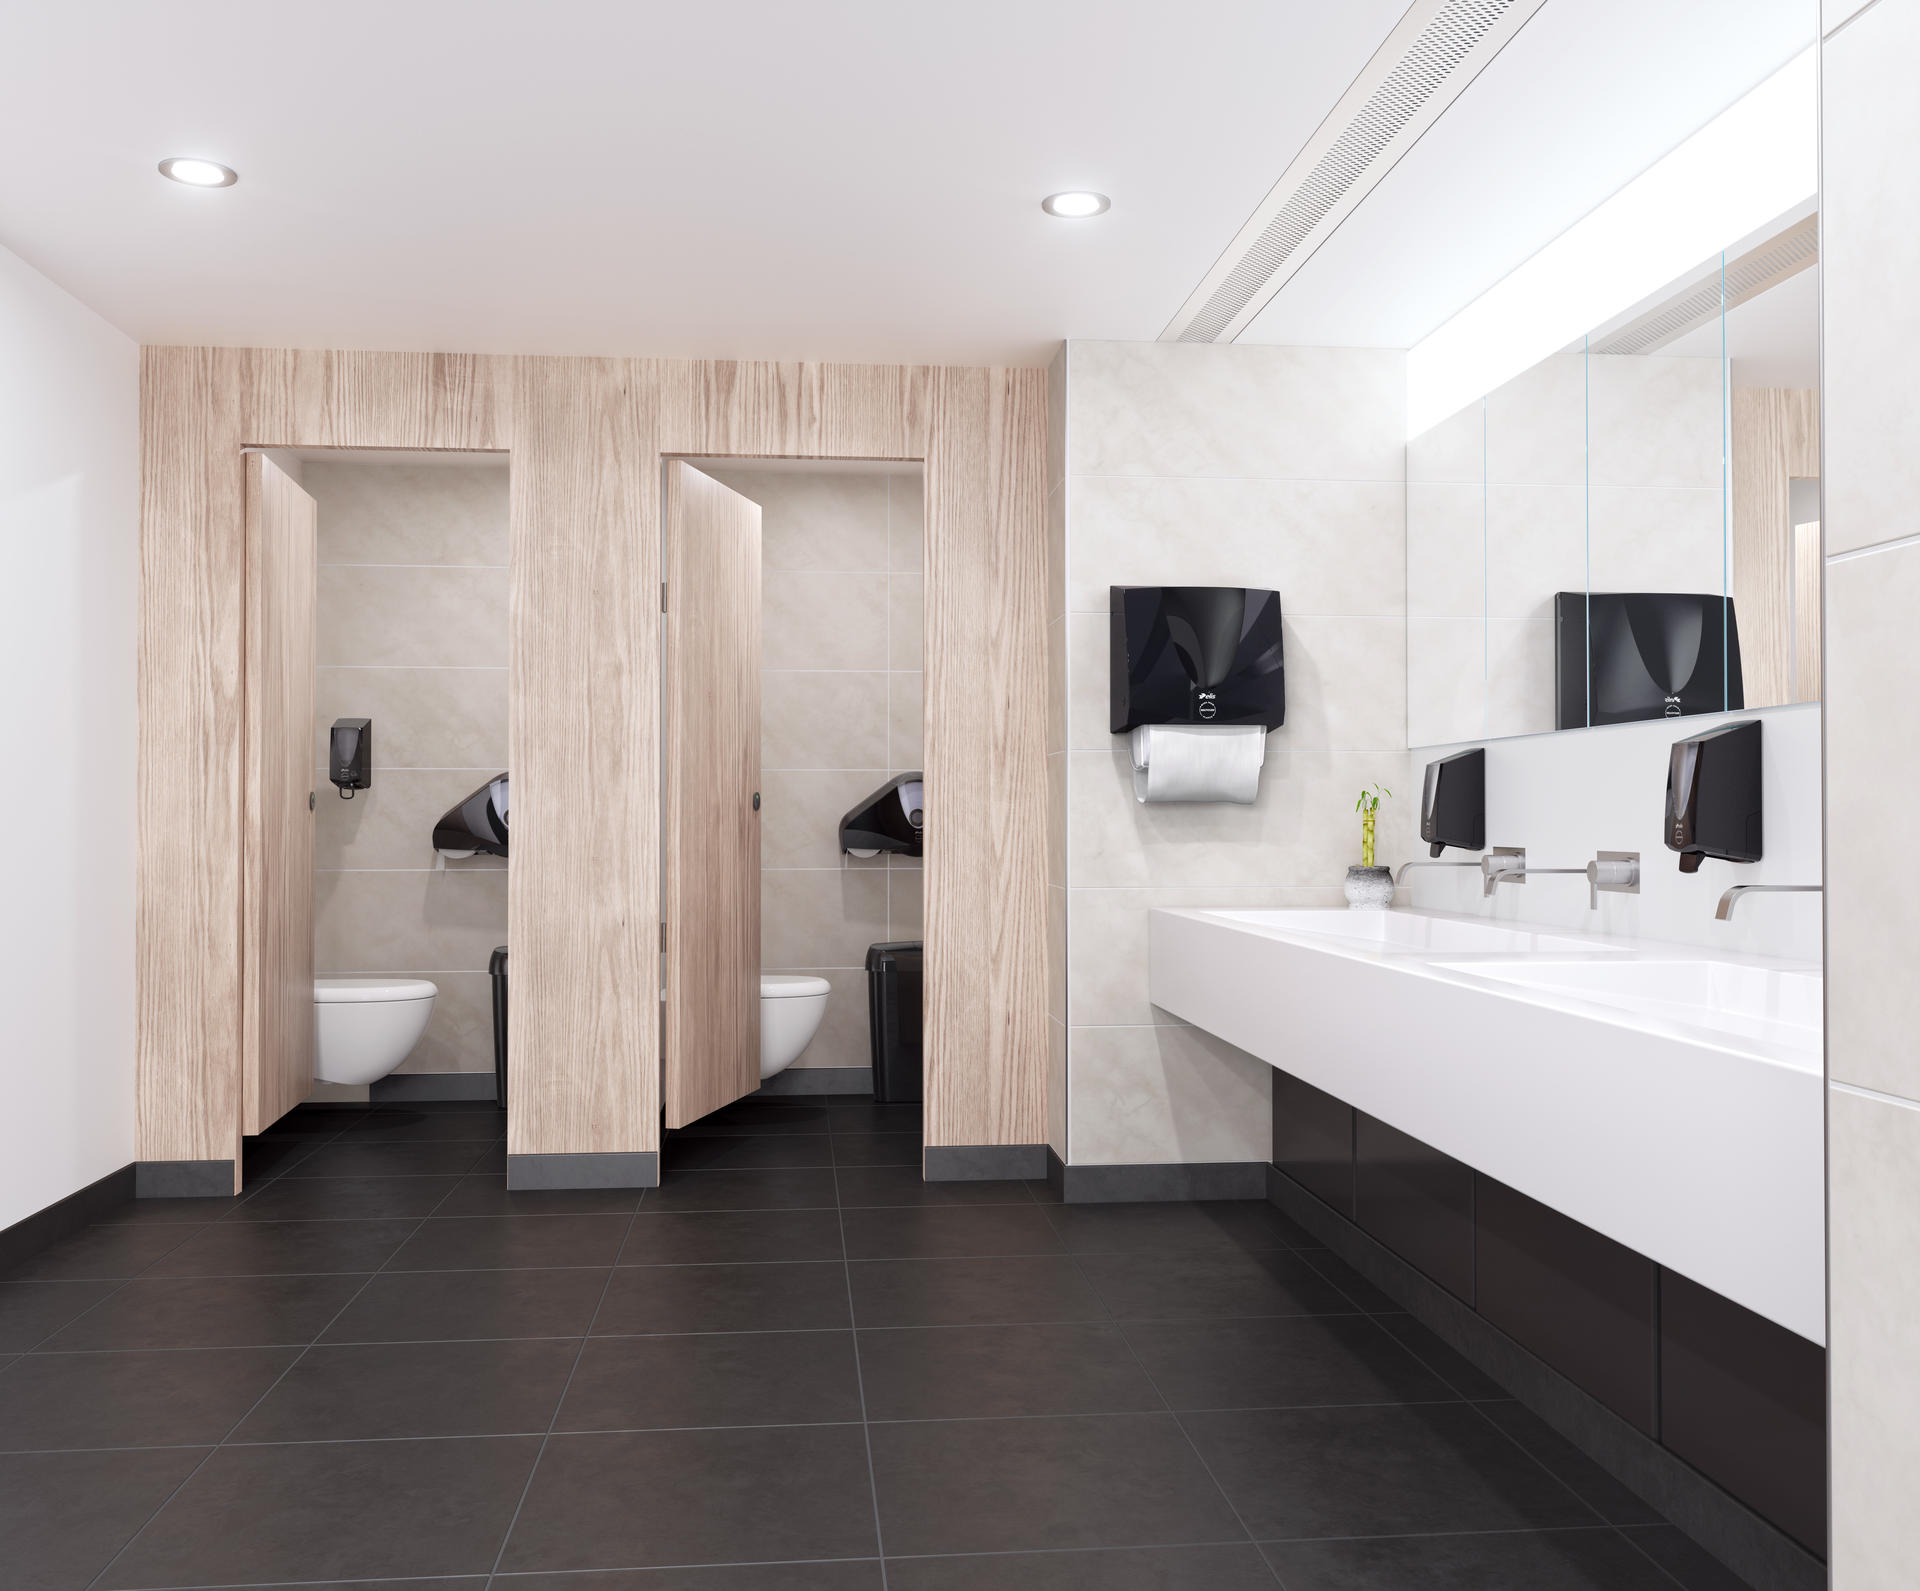 sanitaire voorzieningen equipement sanitaire professionnelle entreprise toilette wc papier belgique luxembourg